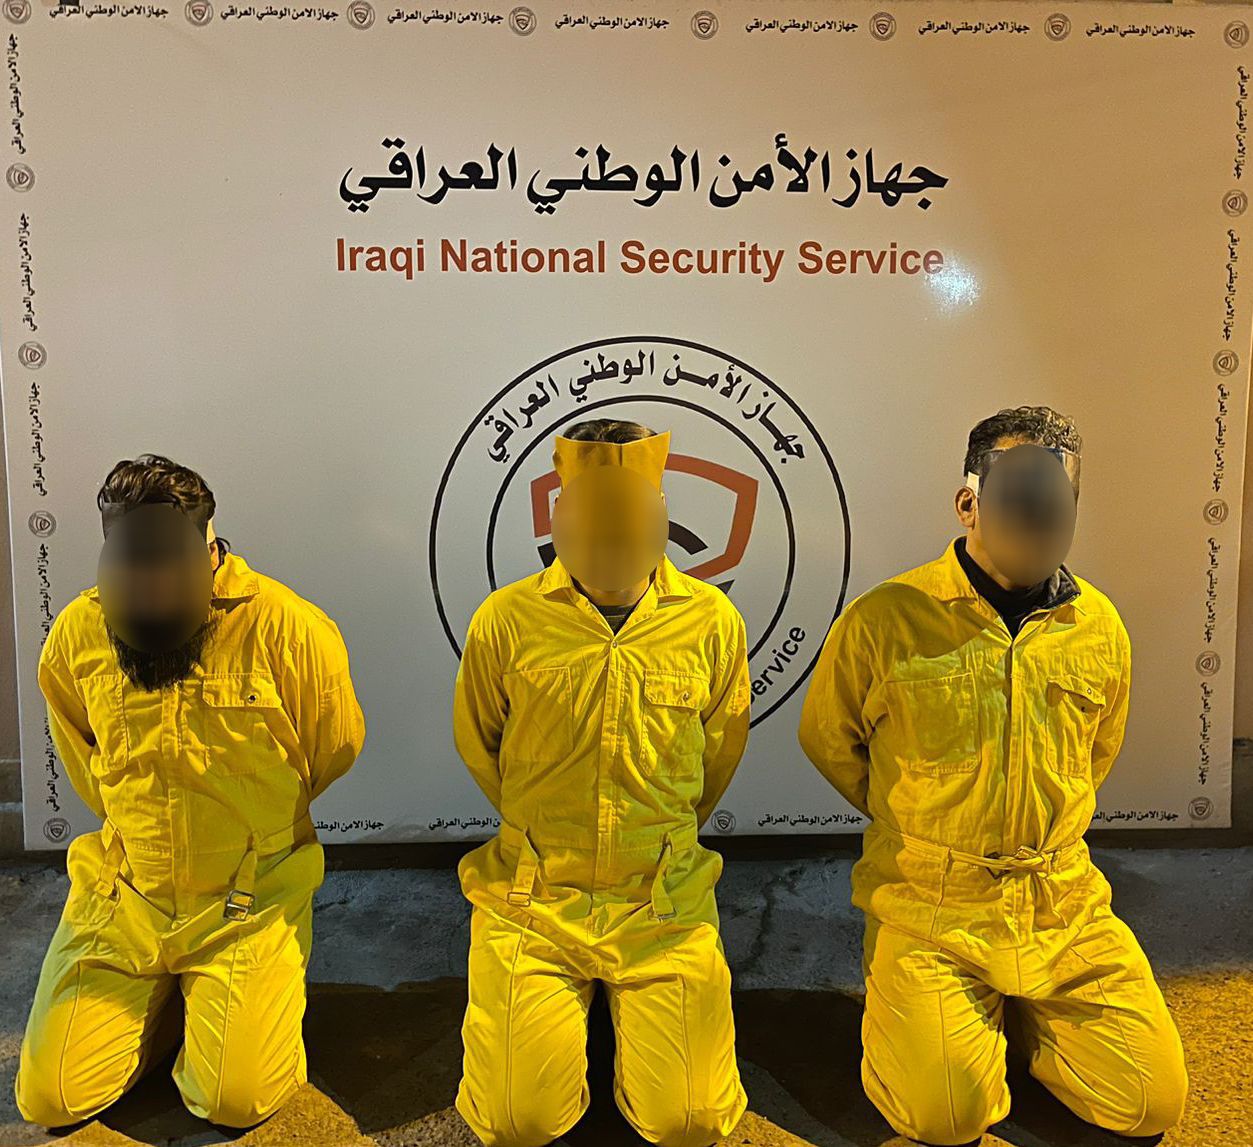 اعتقال مشاهير على مواقع التواصل الاجتماعي في العراق